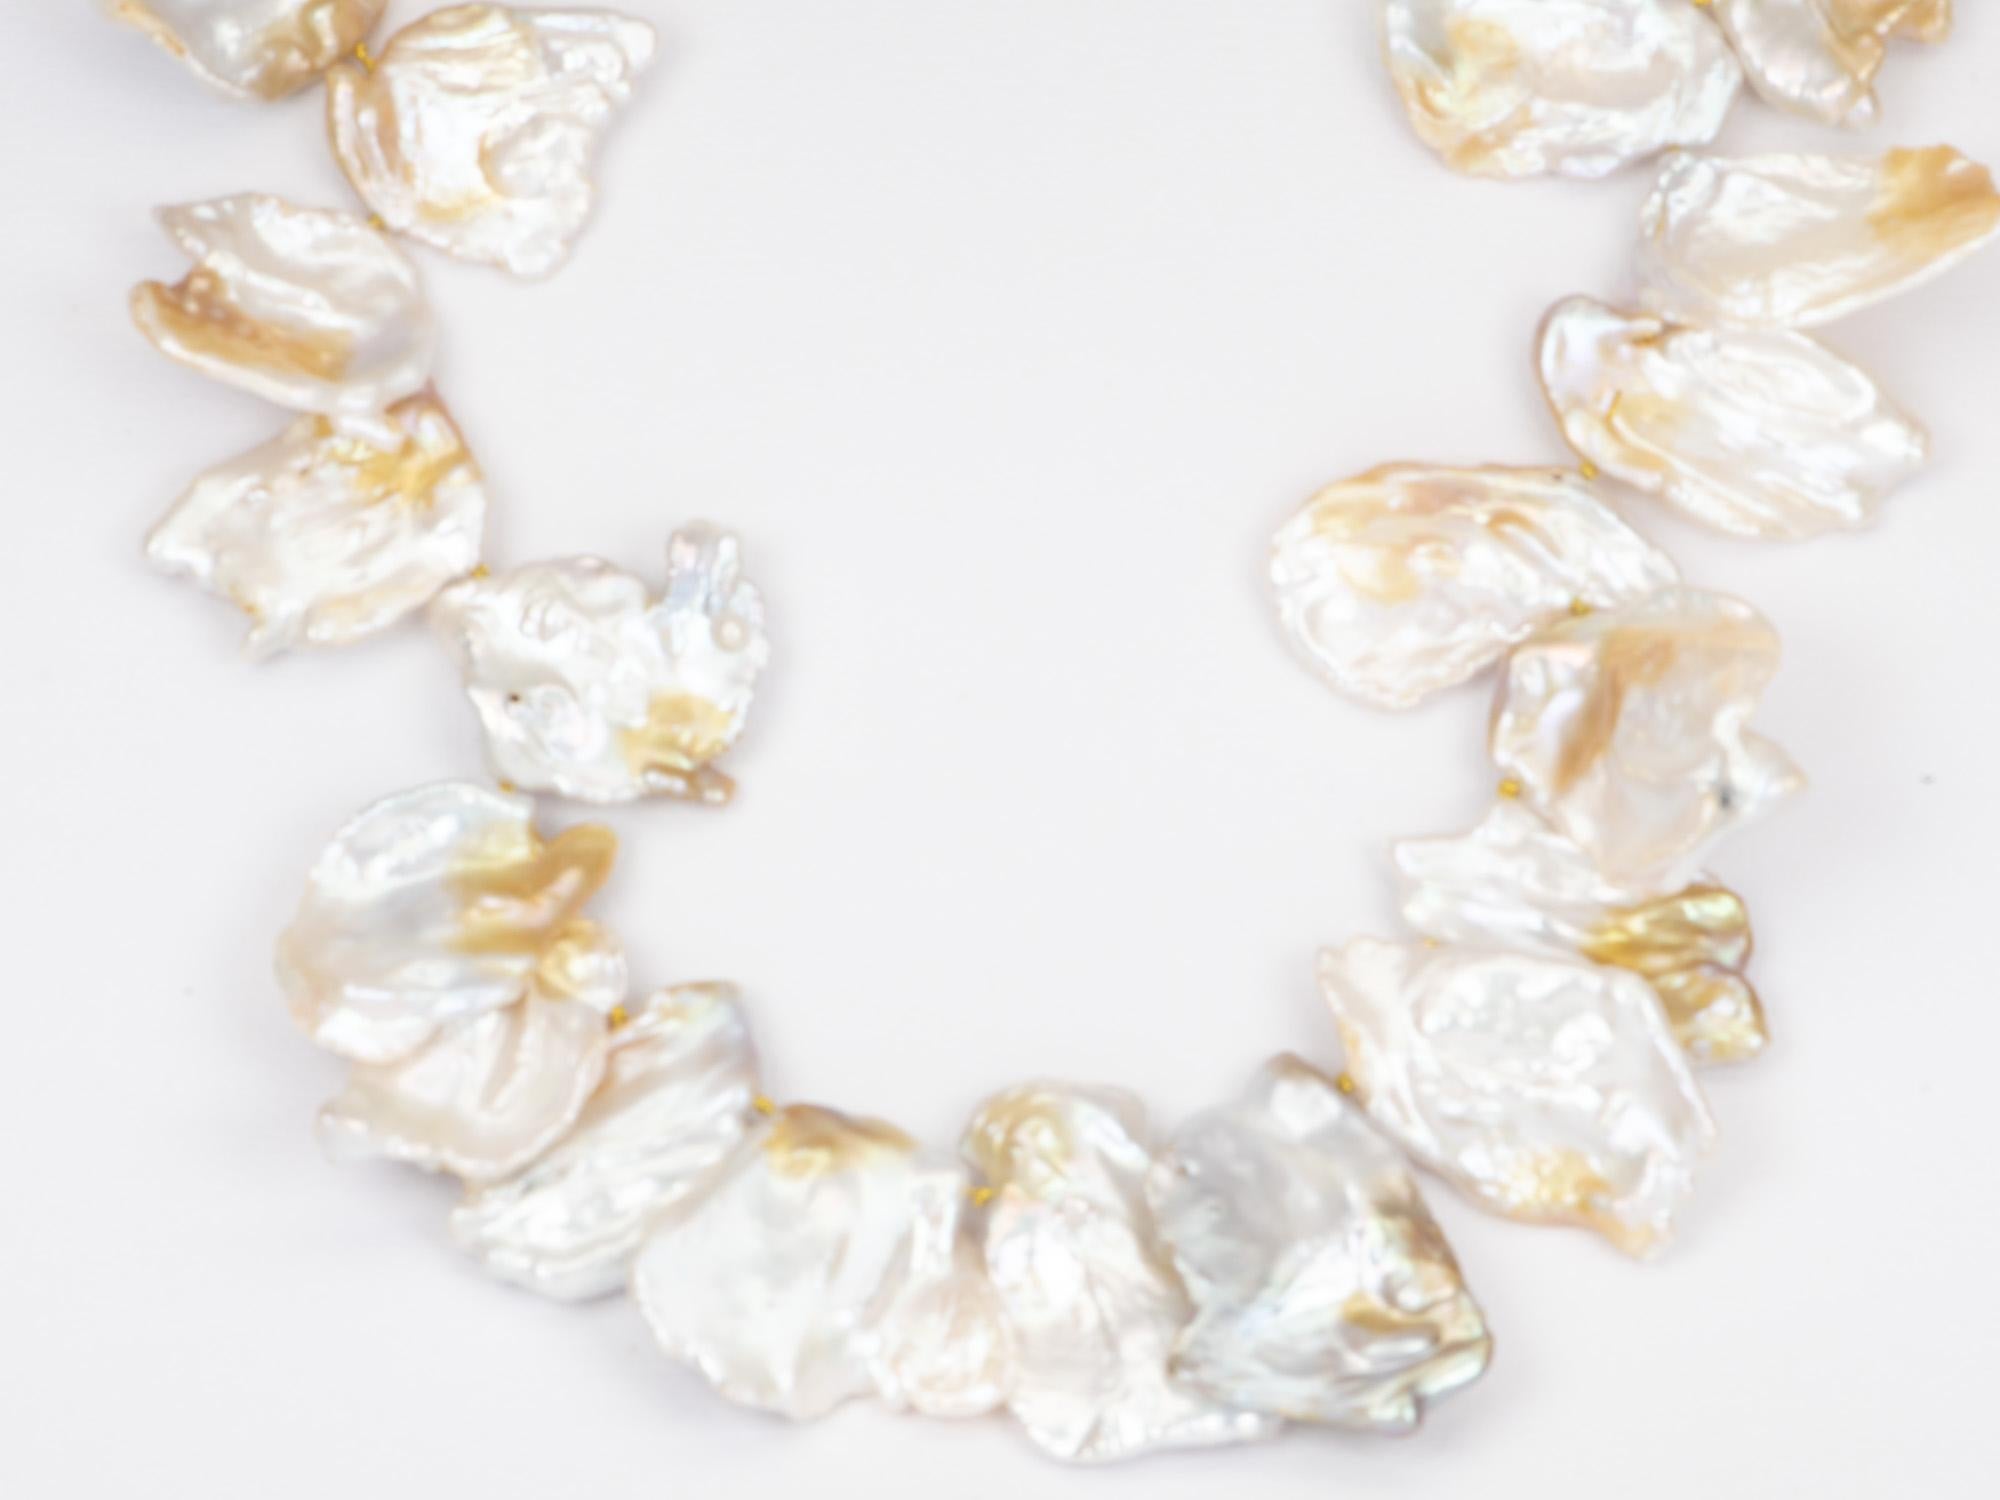 ♥ C'est un magnifique collier enfilé de grandes perles pétales avec un fermoir marin en or 14k.
♥ Les perles sont très grandes, la plus grande mesurant plus de 35 mm de long. Ces perles sont d'autant plus spéciales que chacune d'entre elles est